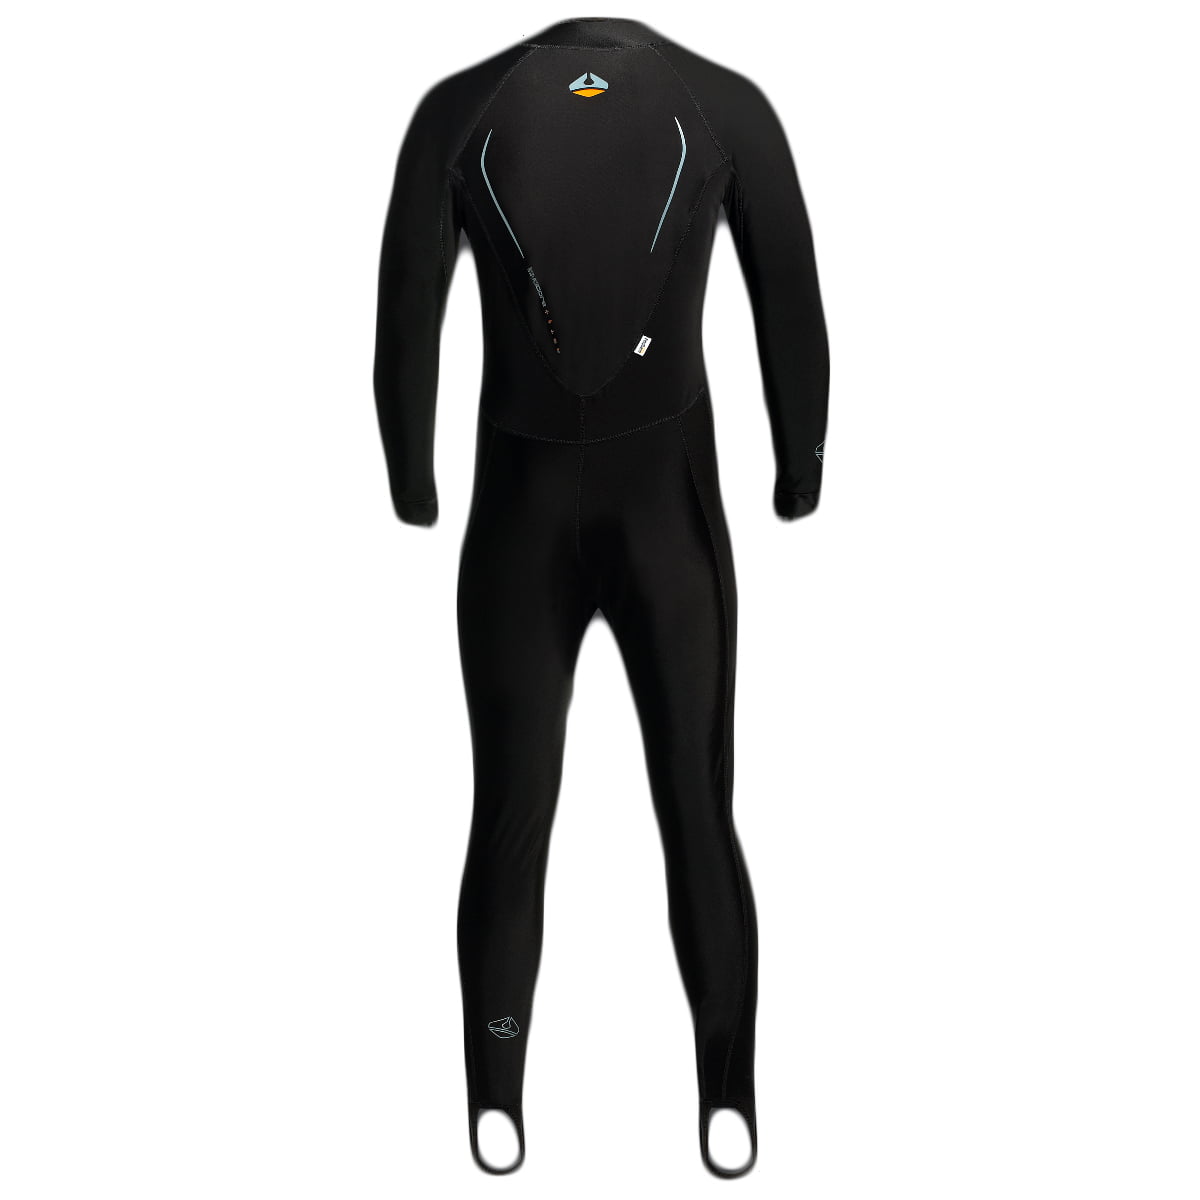 LavaCore Men's Back Zip Full Suit Scuba Diving Surf Wetsuit All Sizes 